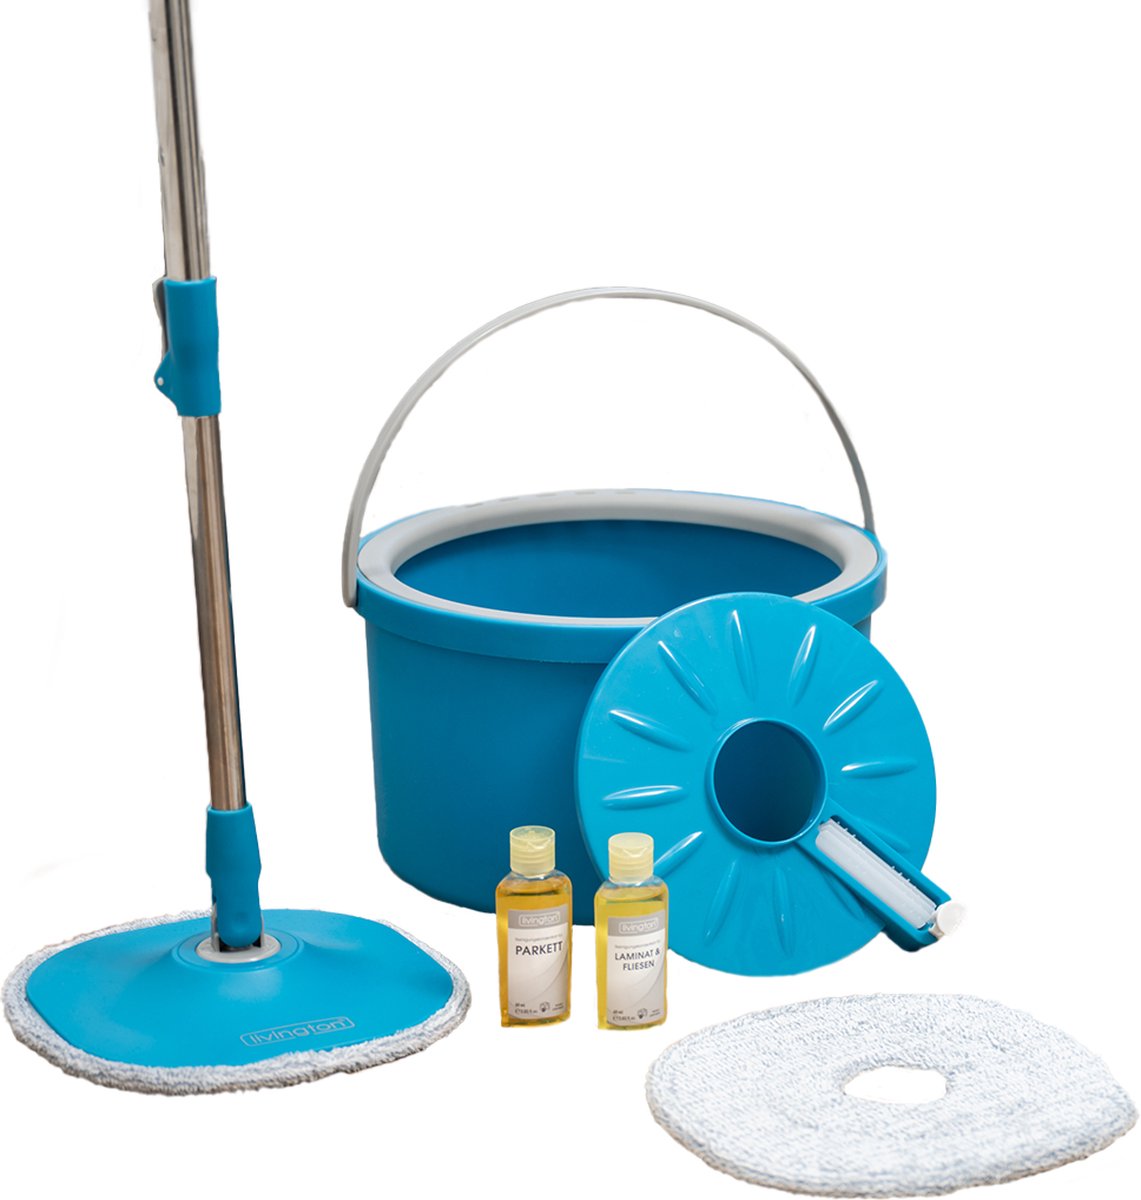 Livington Clean Water Spin Mop friswater-dweilsysteem inclusief reiniger en pads - scheidt vuil water van schoon water - Dweilmop voor elke vloer - 360° draaibare dweilkop - Reinigingsborstel - Livington